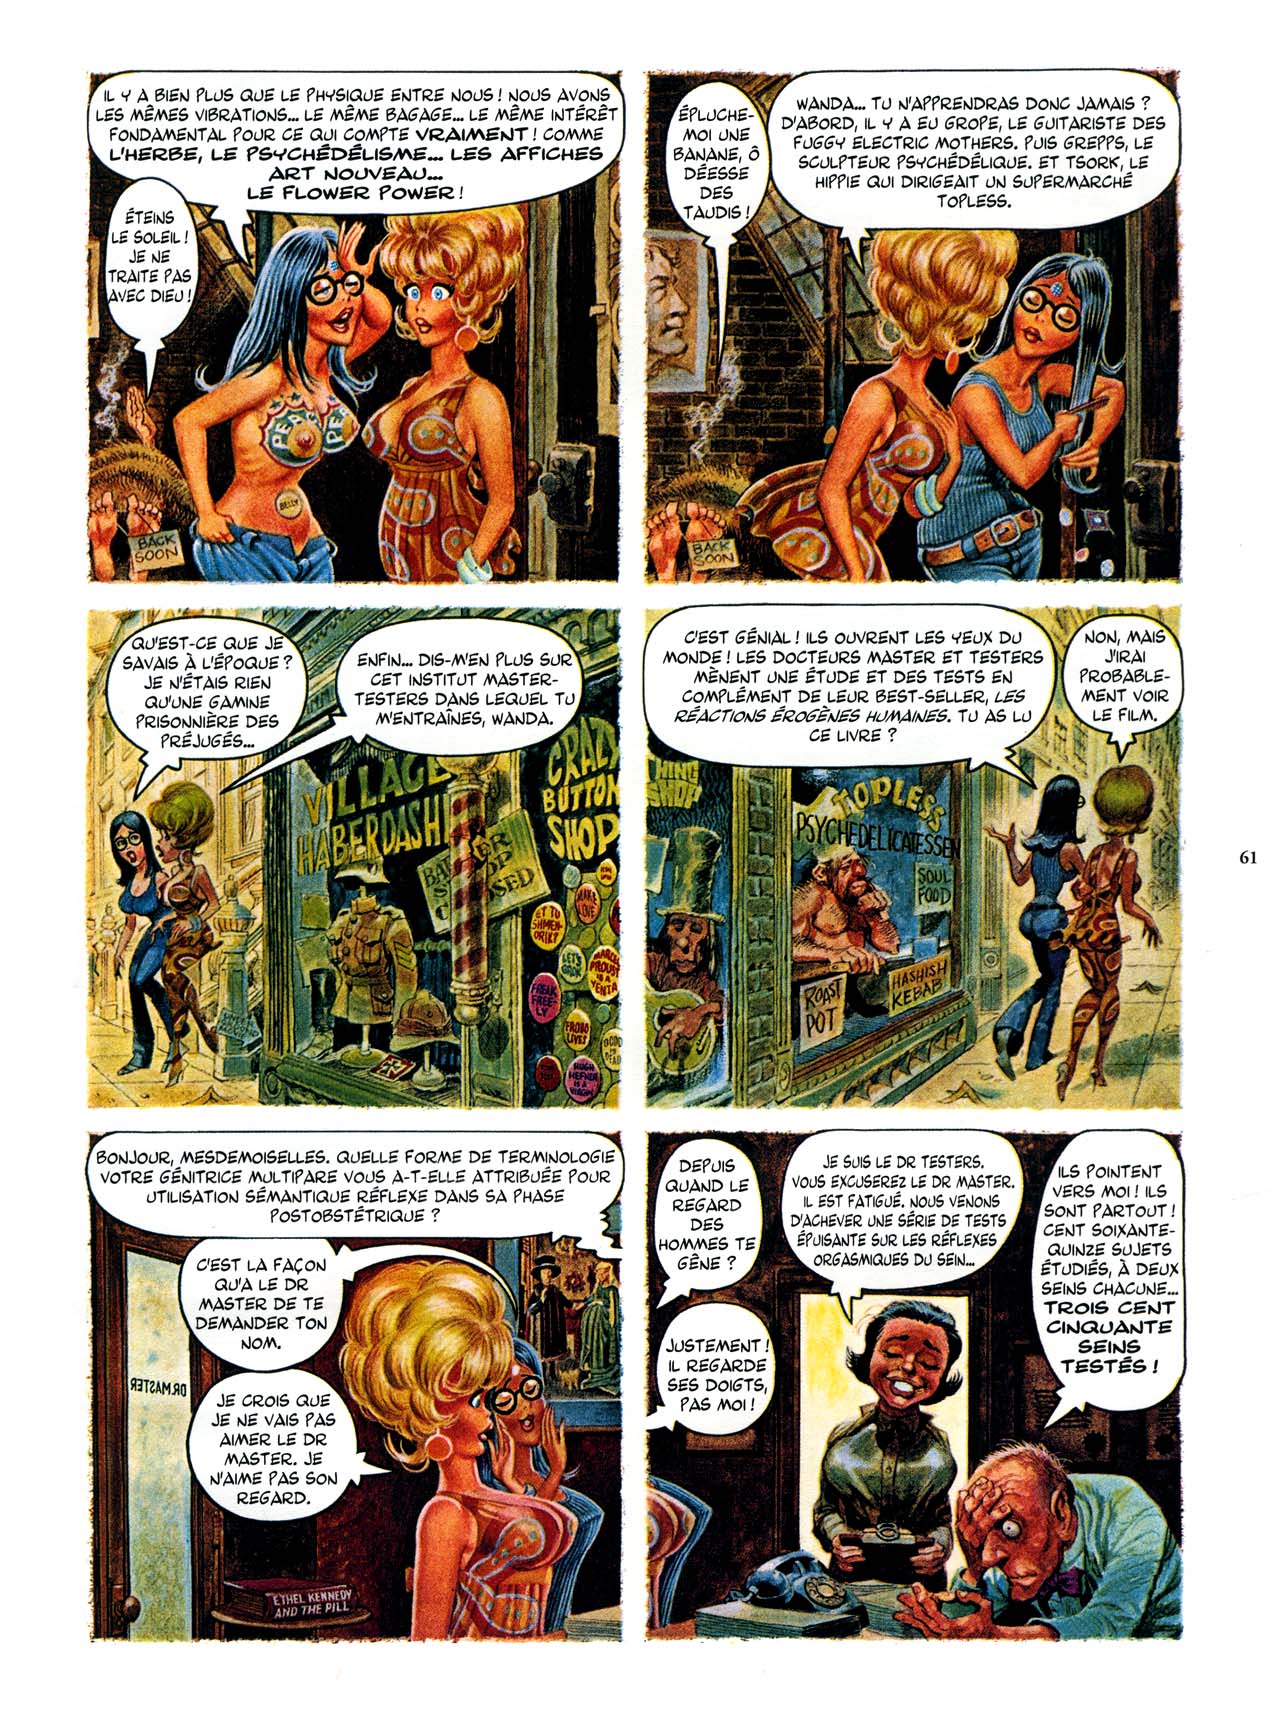 Playboys Little Annie Fanny Vol. 2 - 1965-1970 numero d'image 61